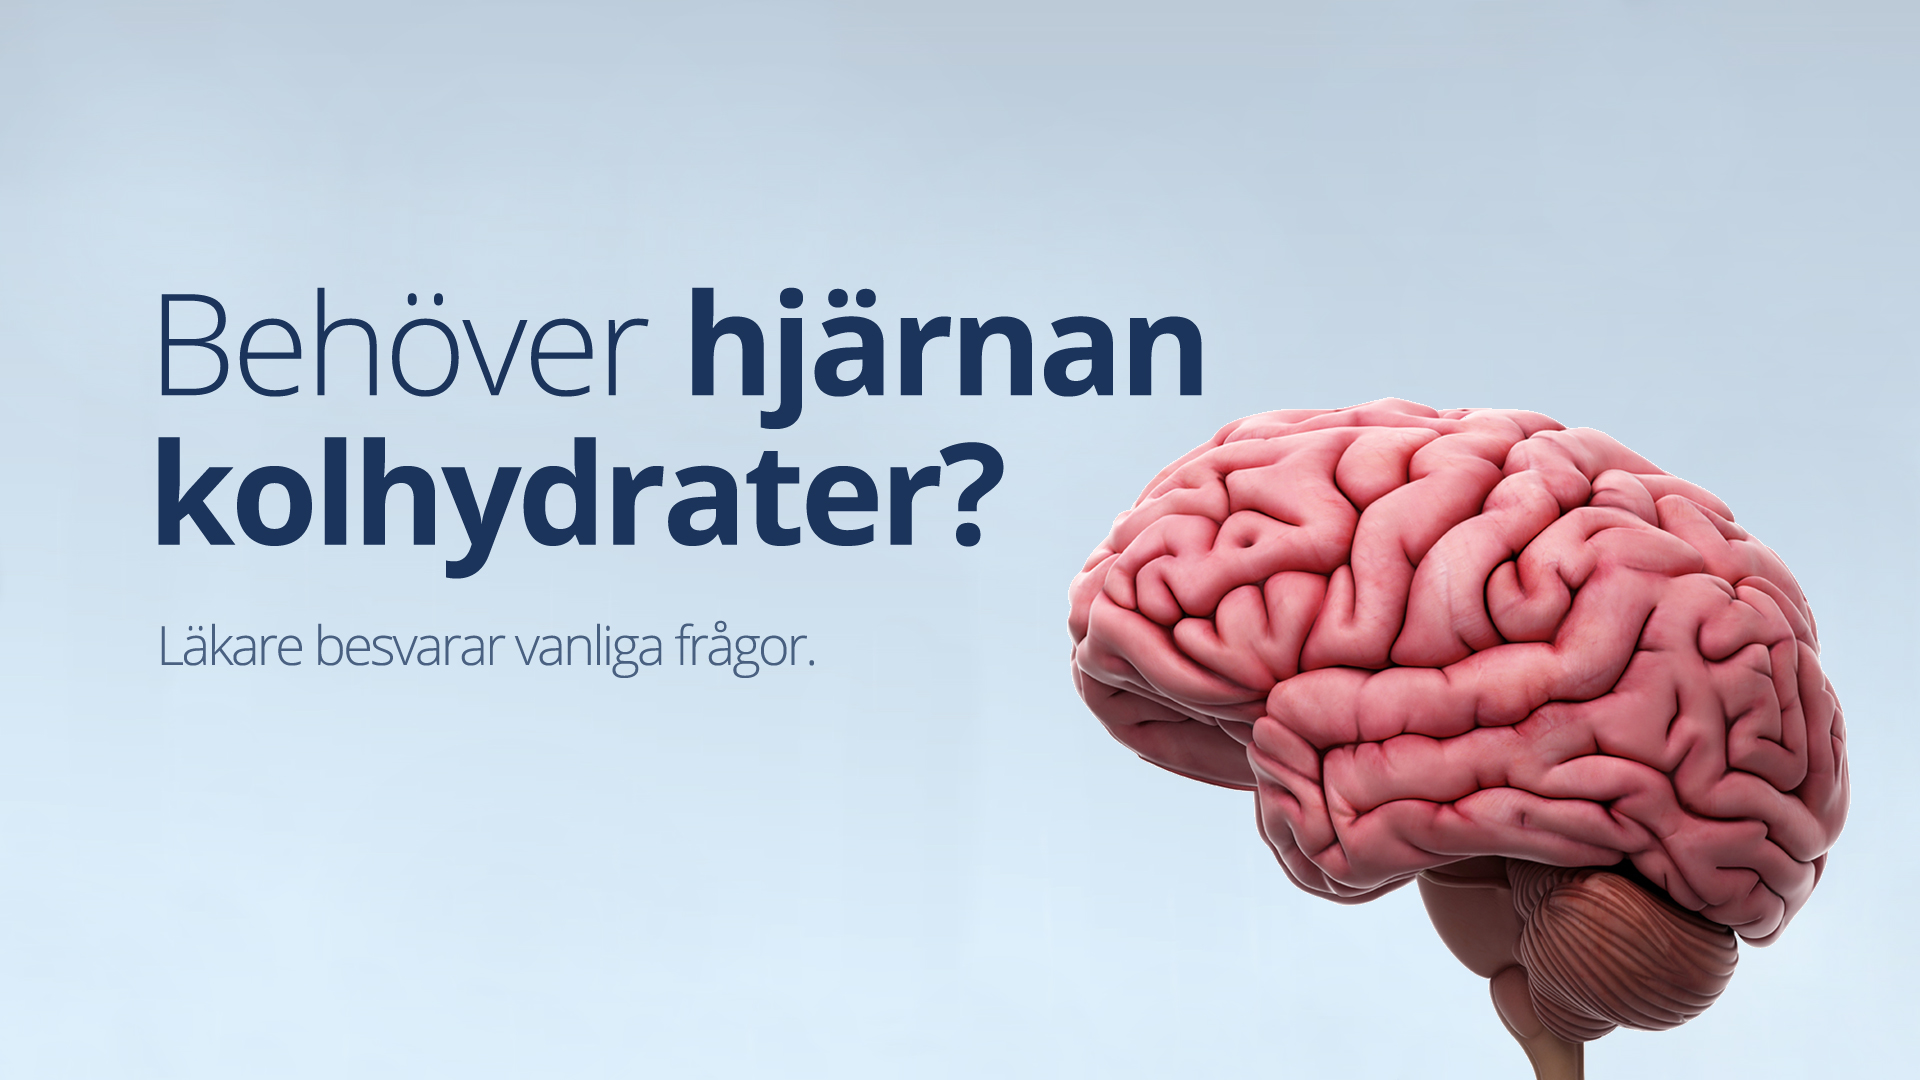 Behöver hjärnan kolhydrater?